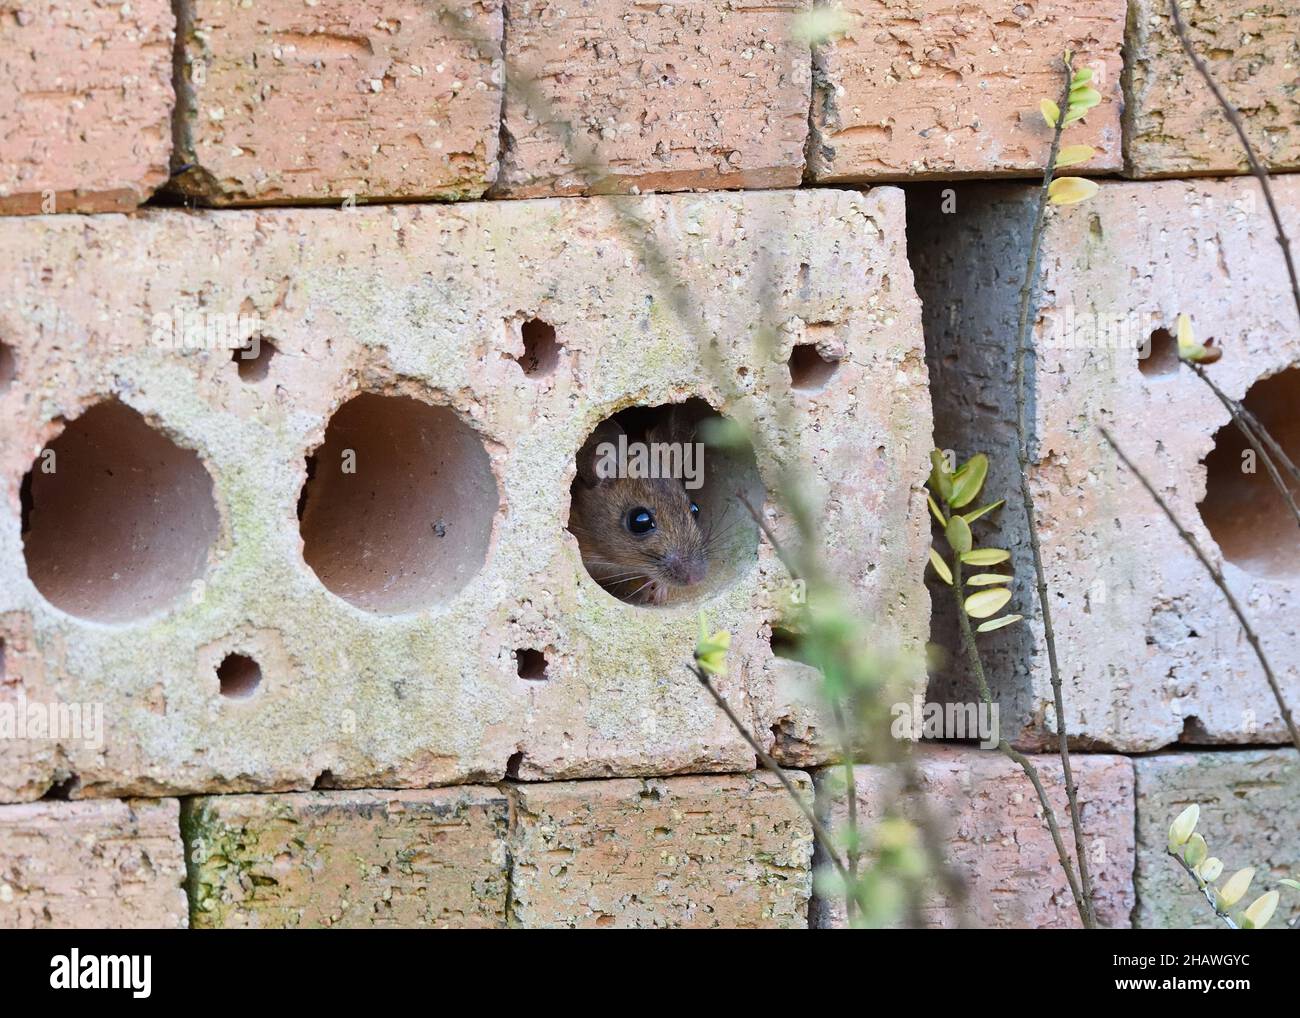 Ratón de campo (Apodemus sylvaticus) sentirse seguro dentro de un montón de .bricks Foto de stock